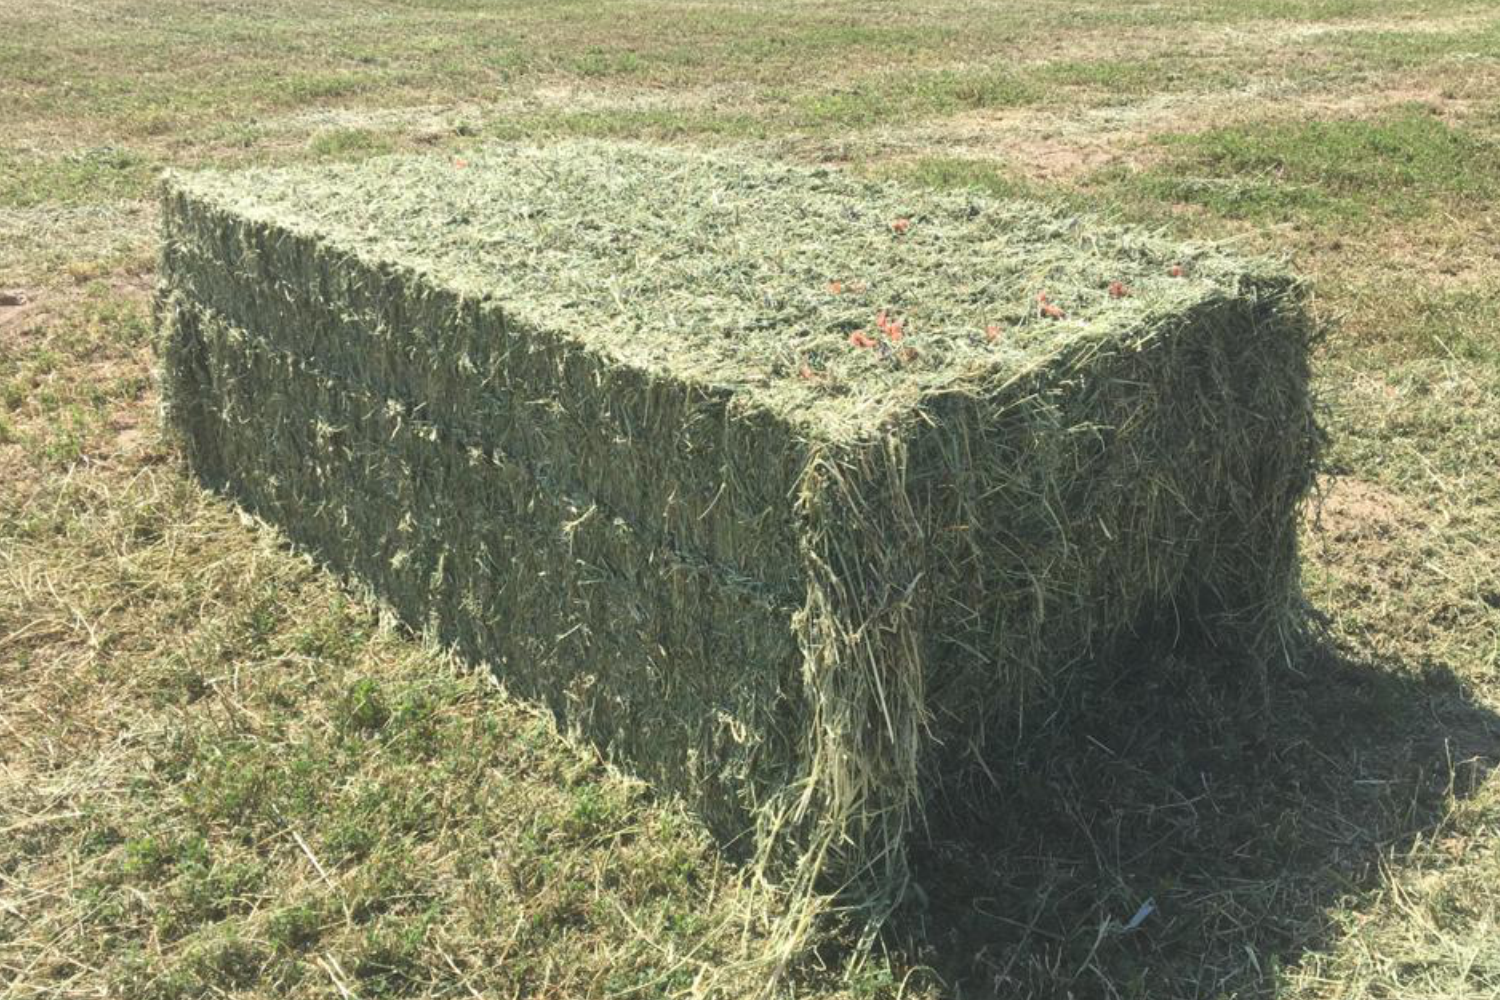 550-600 kg alfalfa hay bale